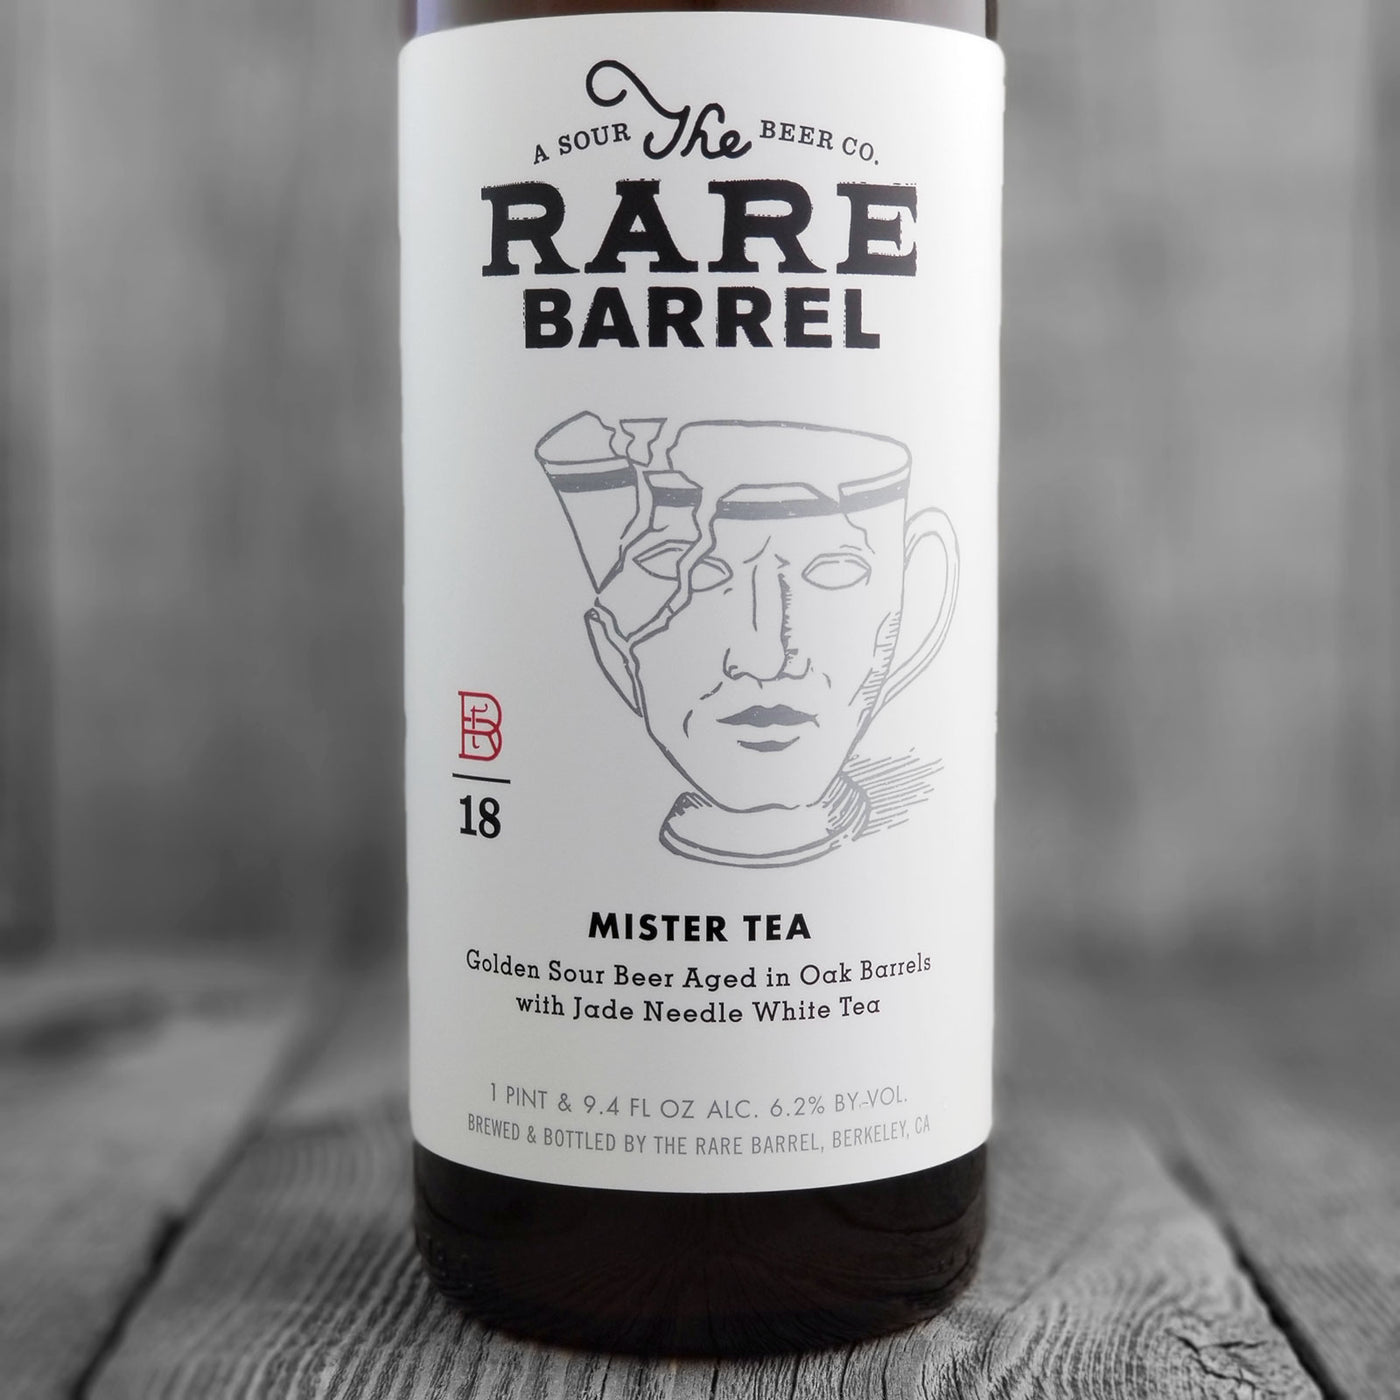 The Rare Barrel Mister Tea